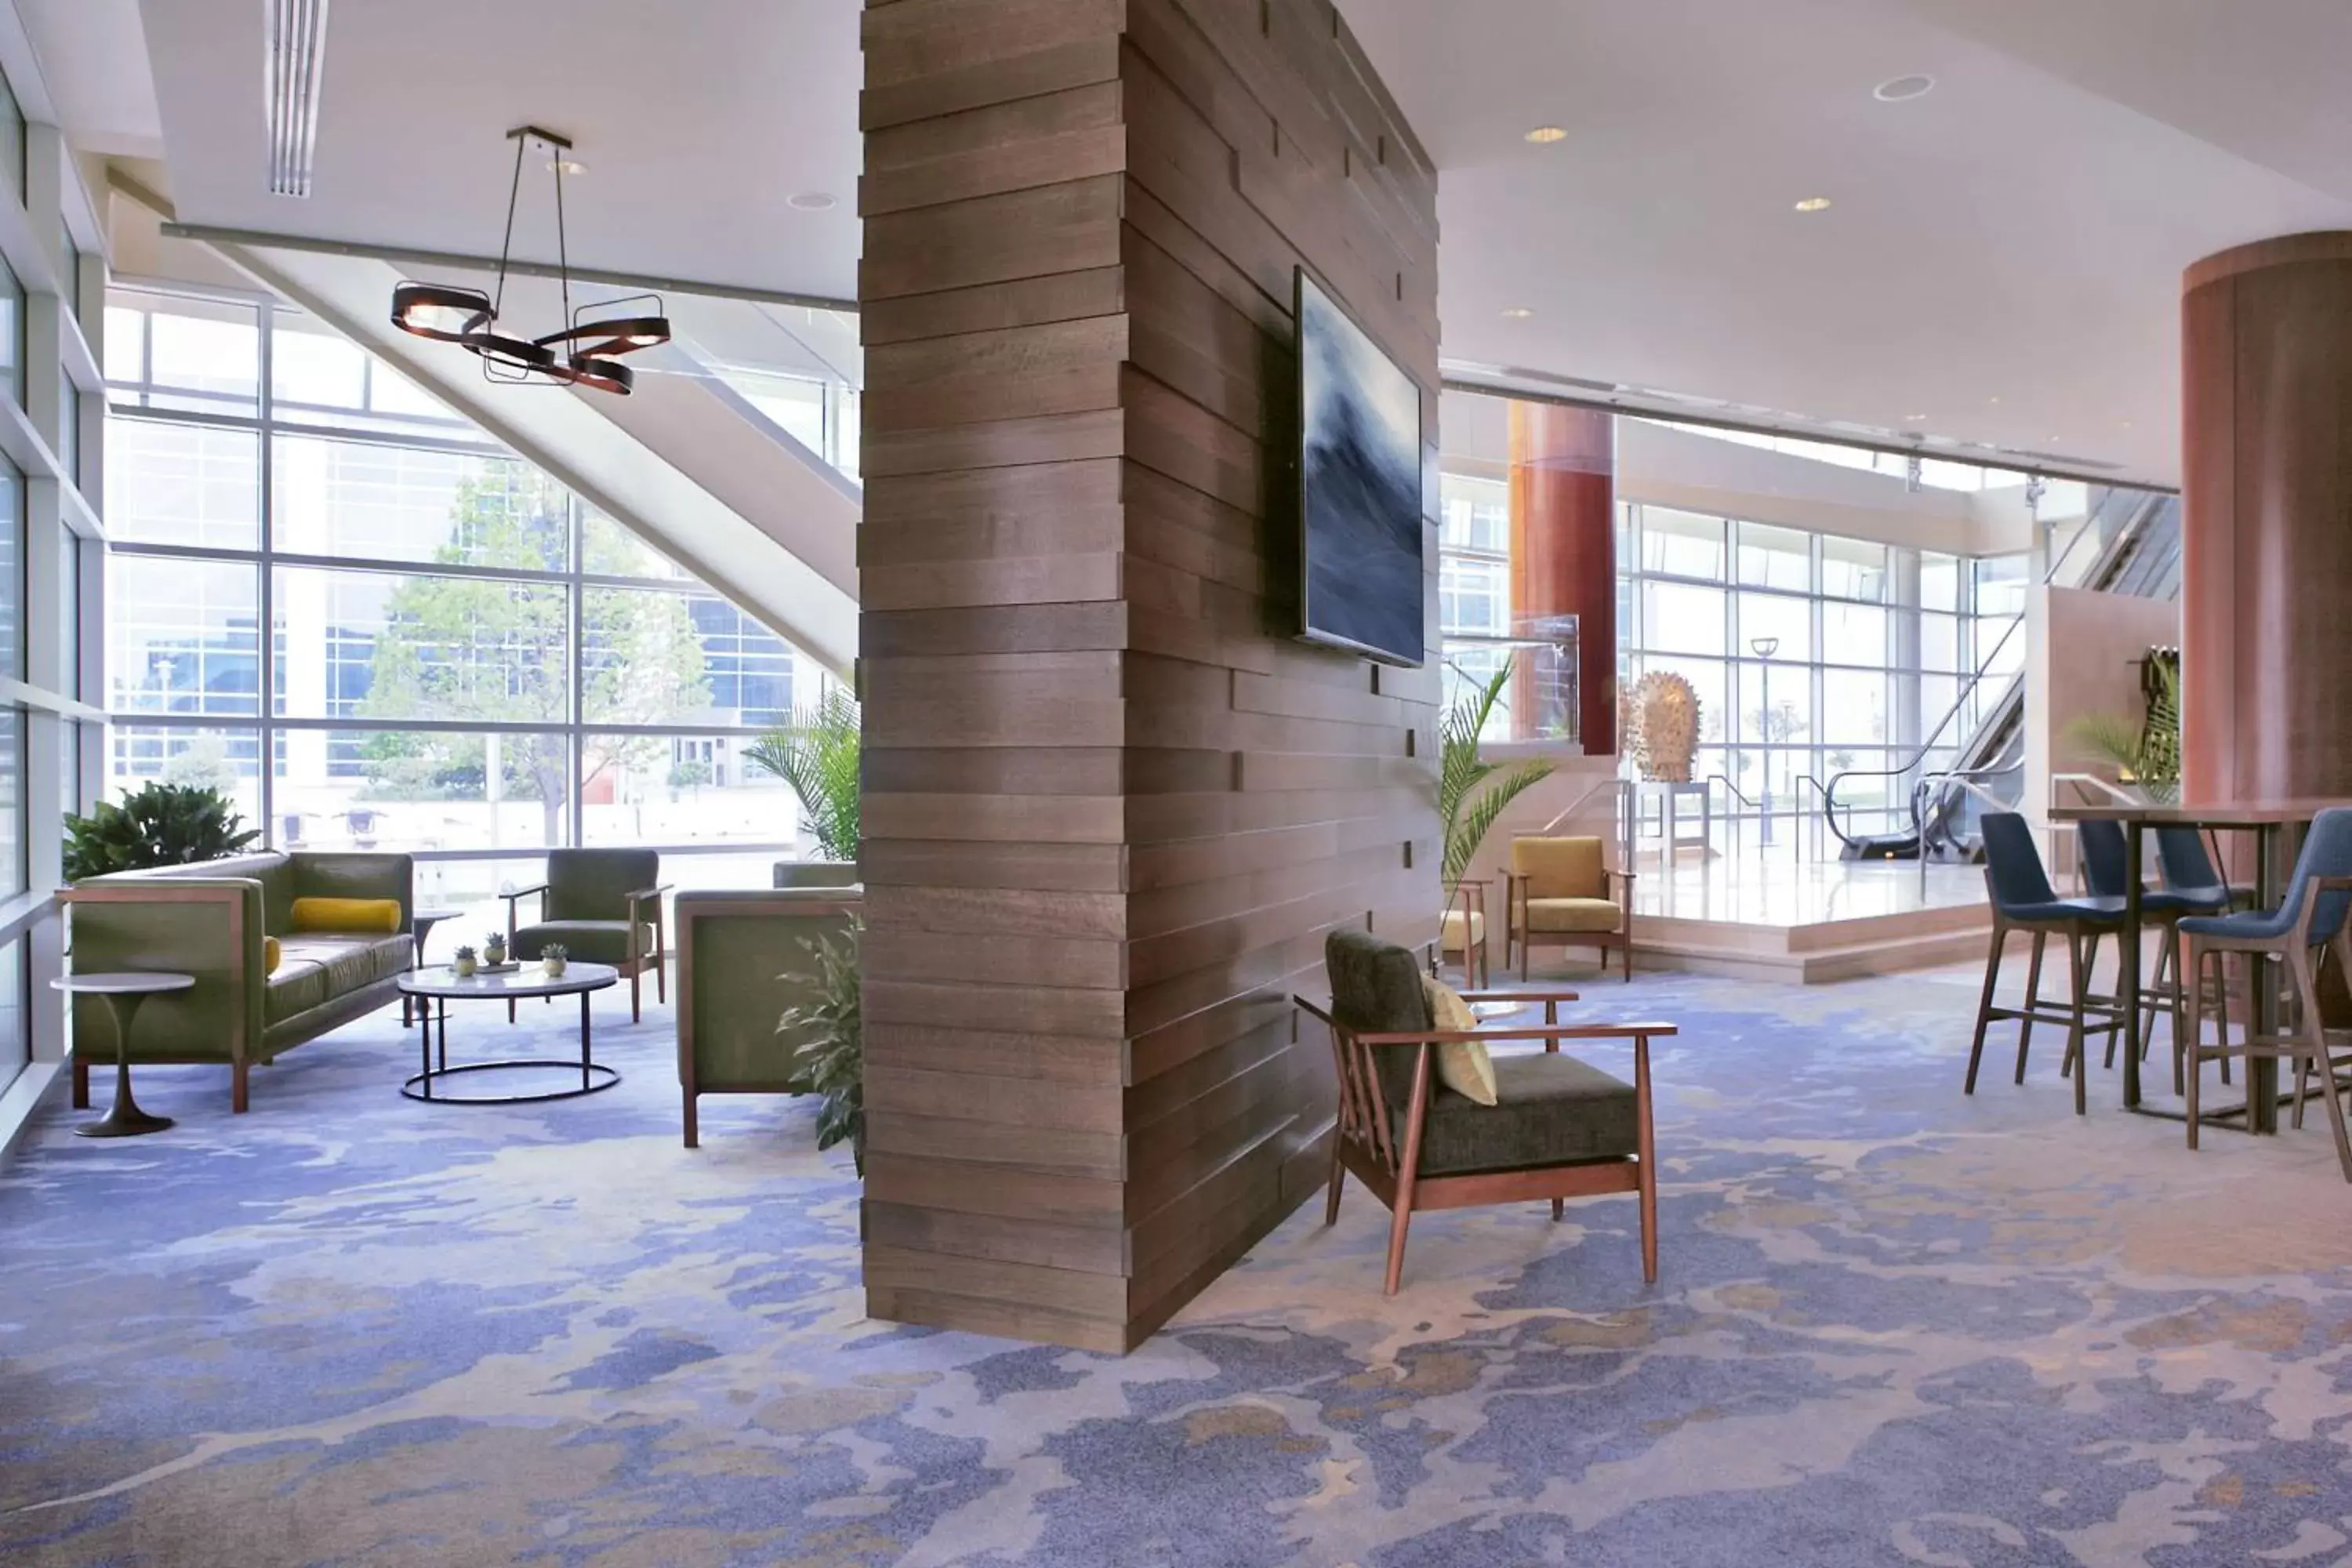 Lobby or reception in Hilton Omaha